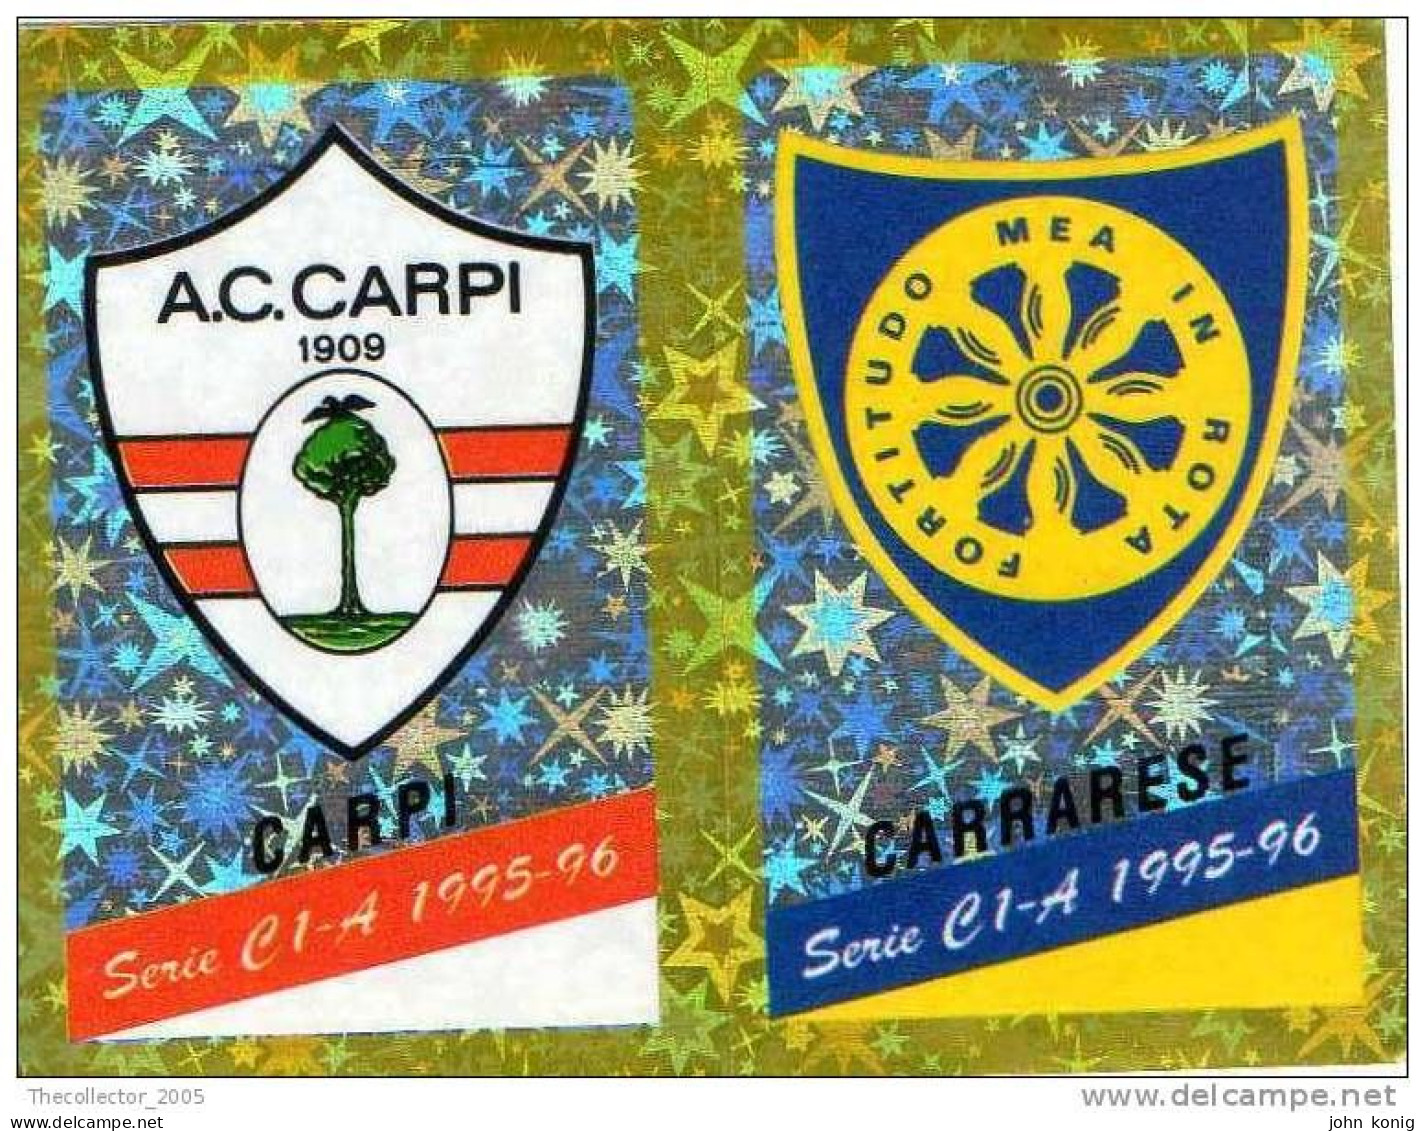 CALCIATORI - CALCIO Figurine Panini-calciatori 1995-96-n.527ab-scudetto Carpi-Carrarese (prismatico) - NUOVA-MAI INCOLLA - Italiaanse Uitgave